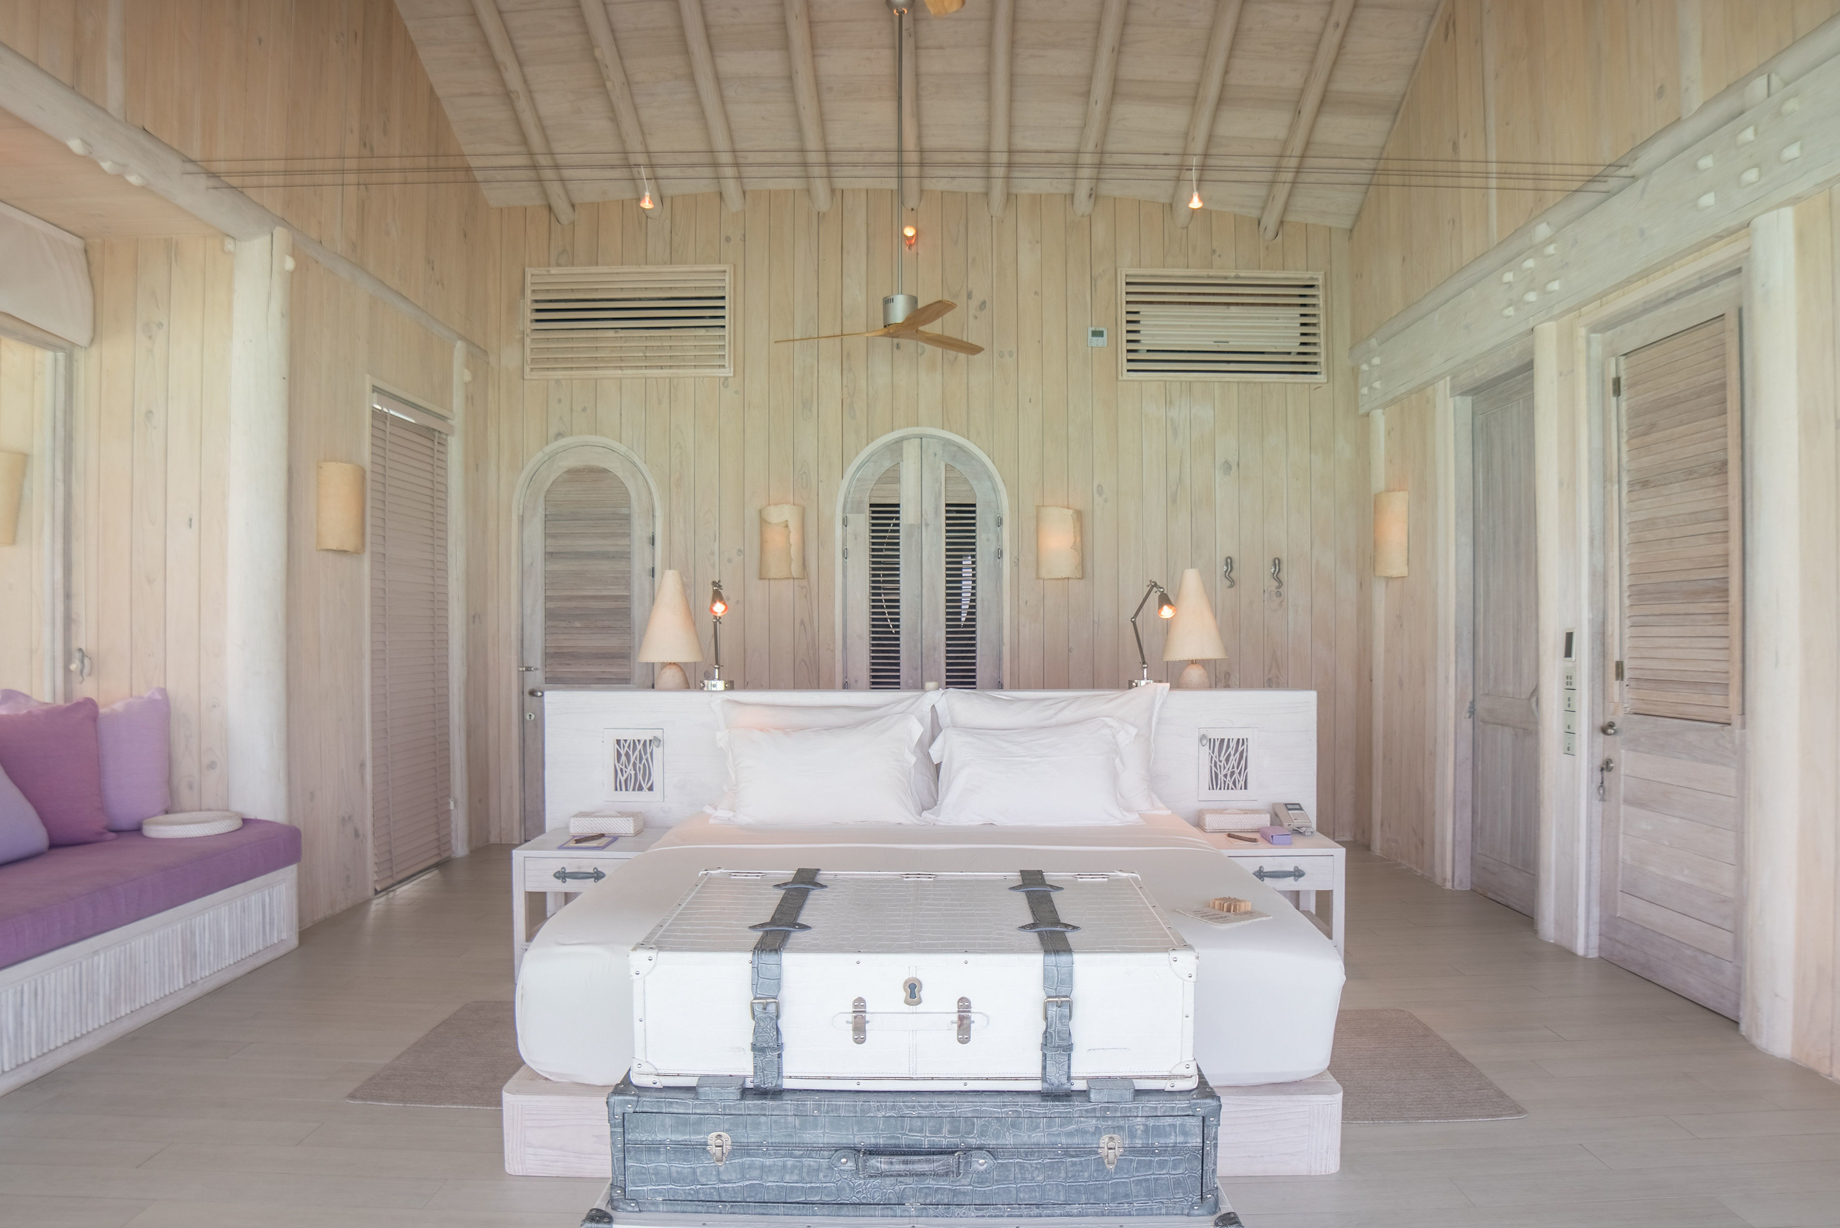 Soneva Jani Resort – Noonu Atoll, Medhufaru, Maldives – 2 Bedroom Water Retreat Villa Bedroom